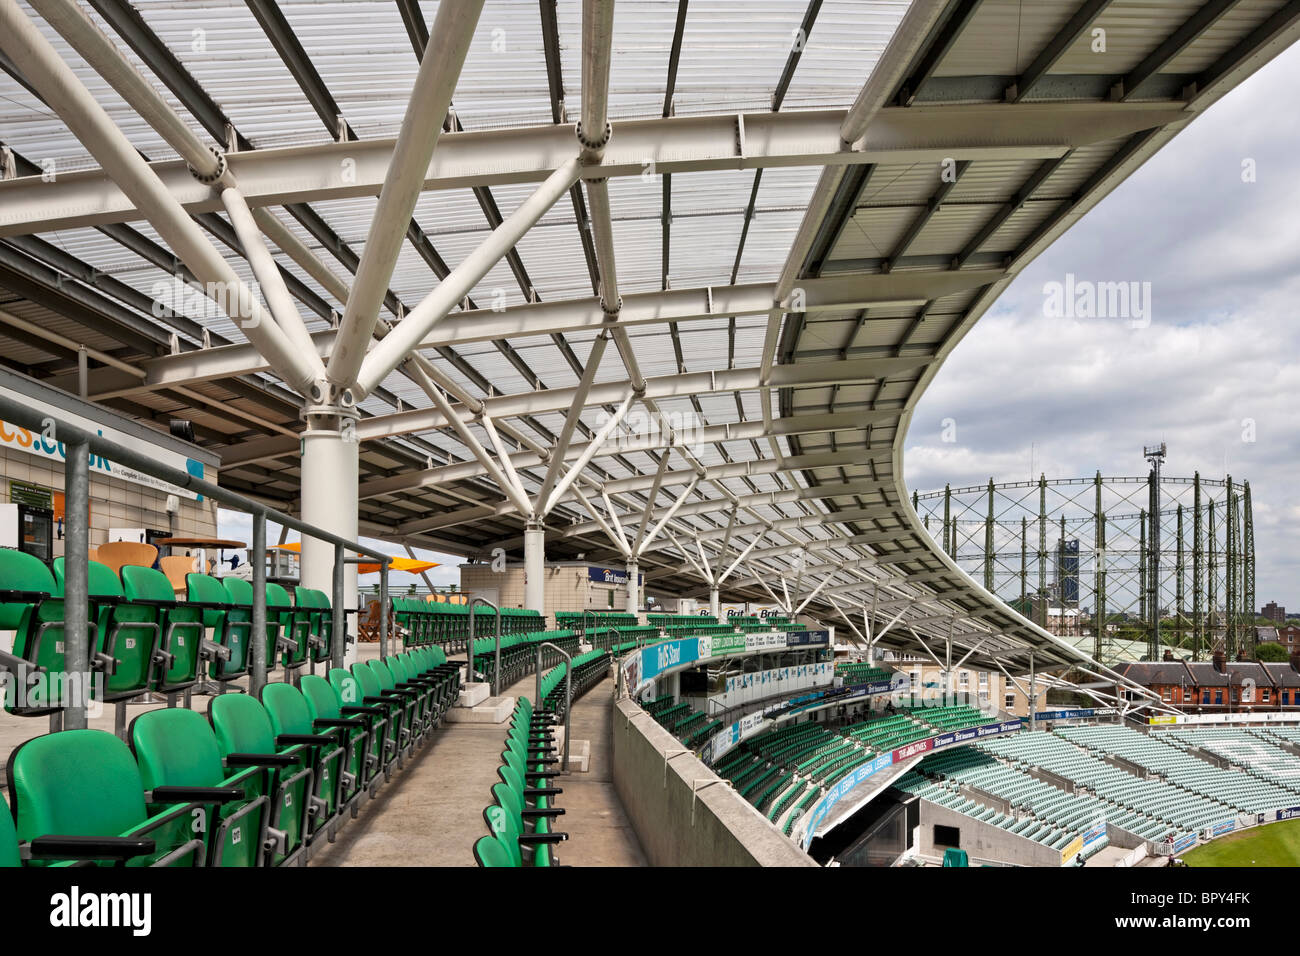 L'OCS Stand à Kennington Oval Cricket Ground, conçu par les architectes Hok Sport Banque D'Images